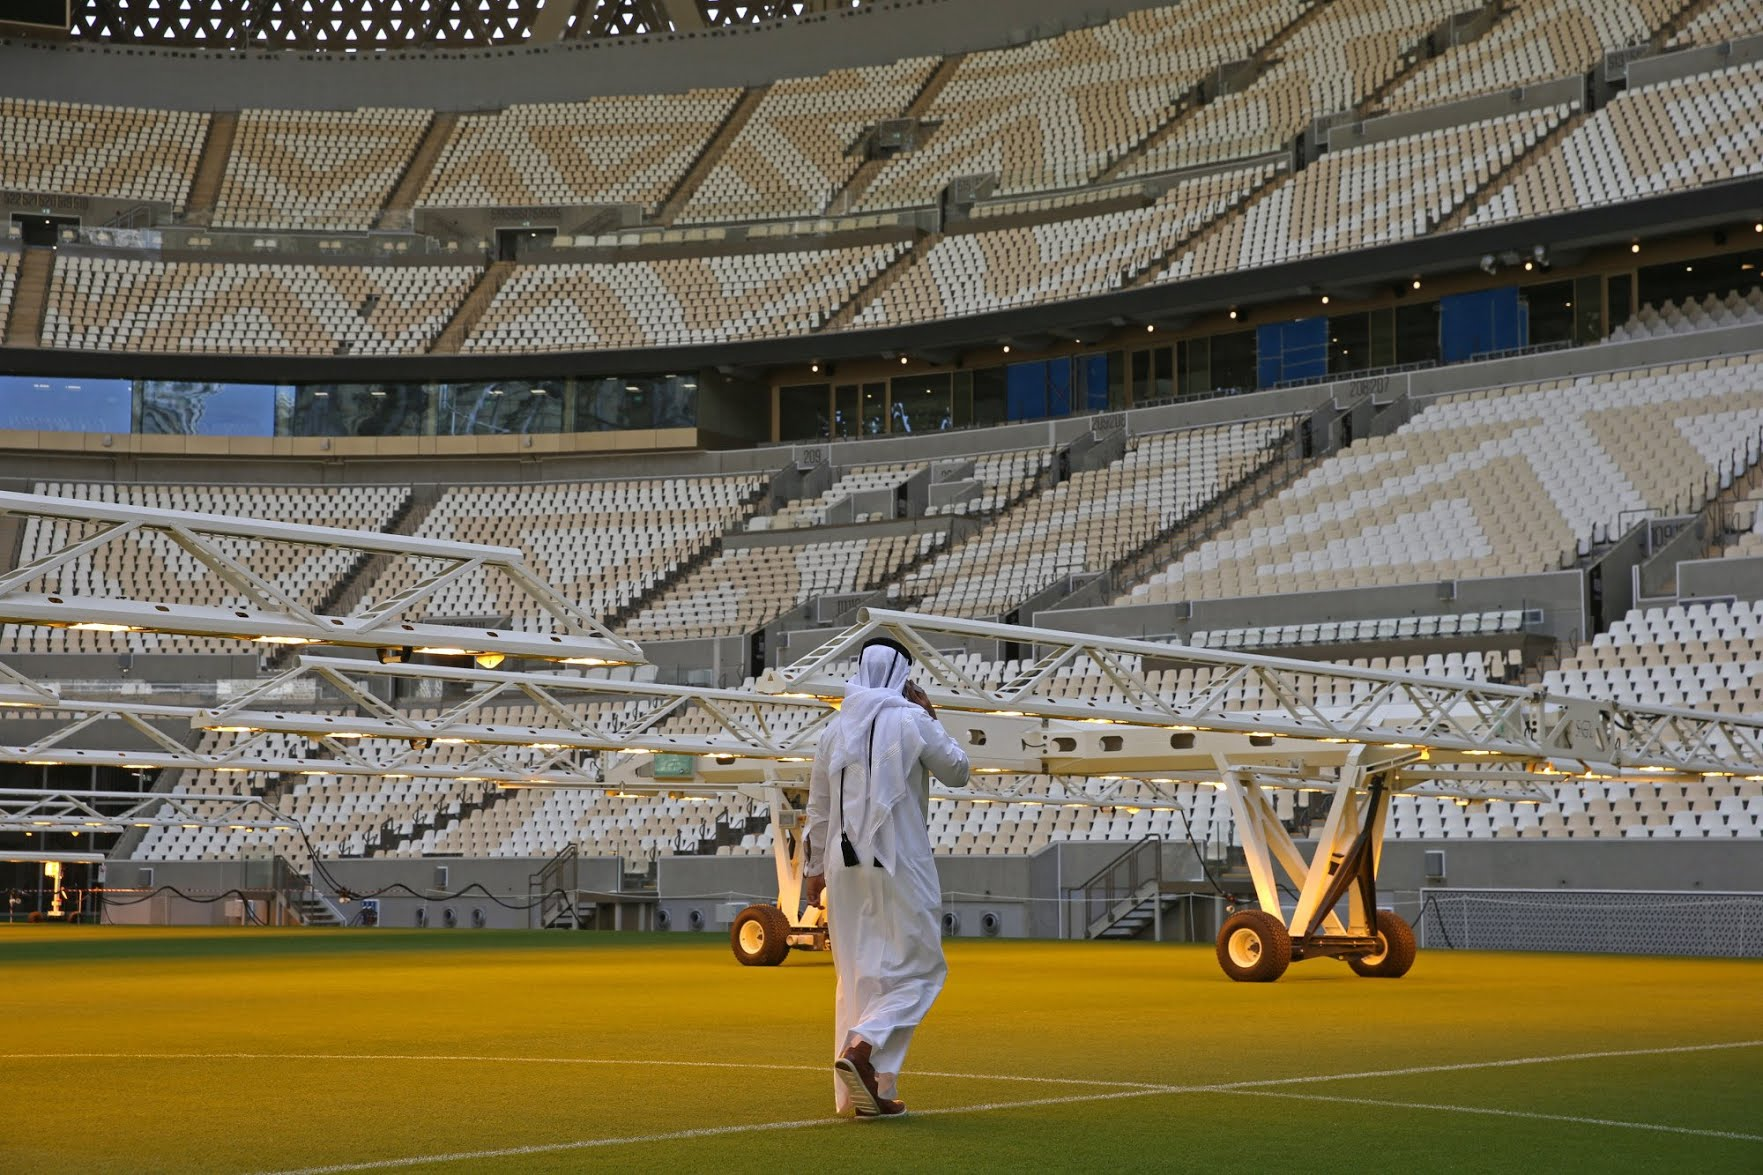 Mặc kệ giá cao nhưng Tour du lịch đến Qatar vẫn cháy vé